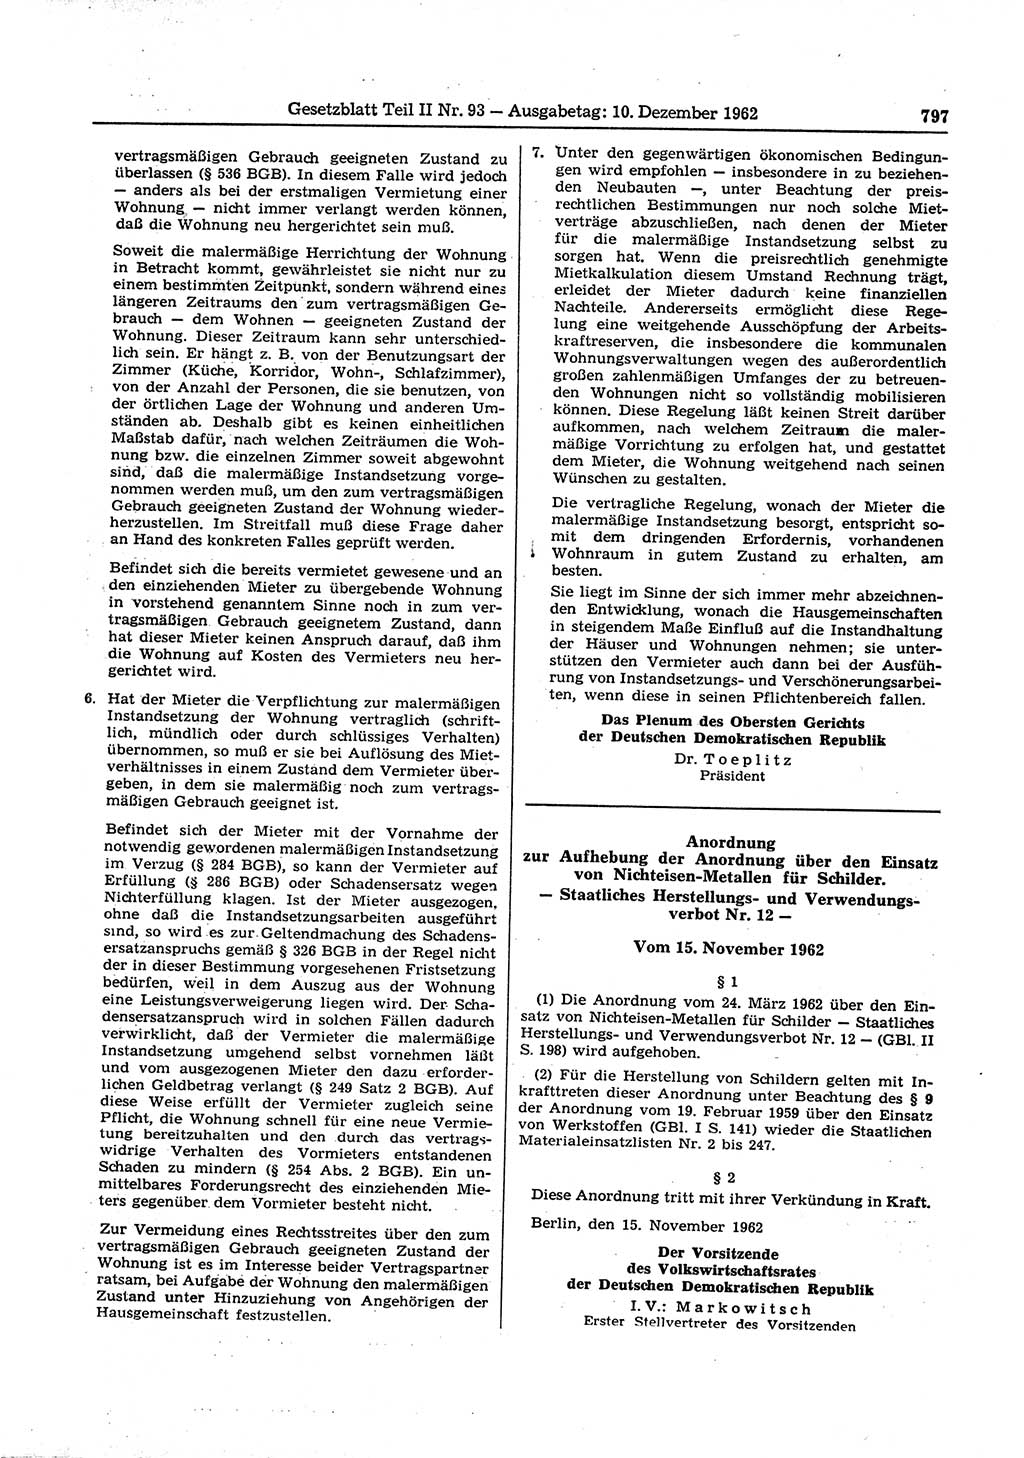 Gesetzblatt (GBl.) der Deutschen Demokratischen Republik (DDR) Teil ⅠⅠ 1962, Seite 797 (GBl. DDR ⅠⅠ 1962, S. 797)